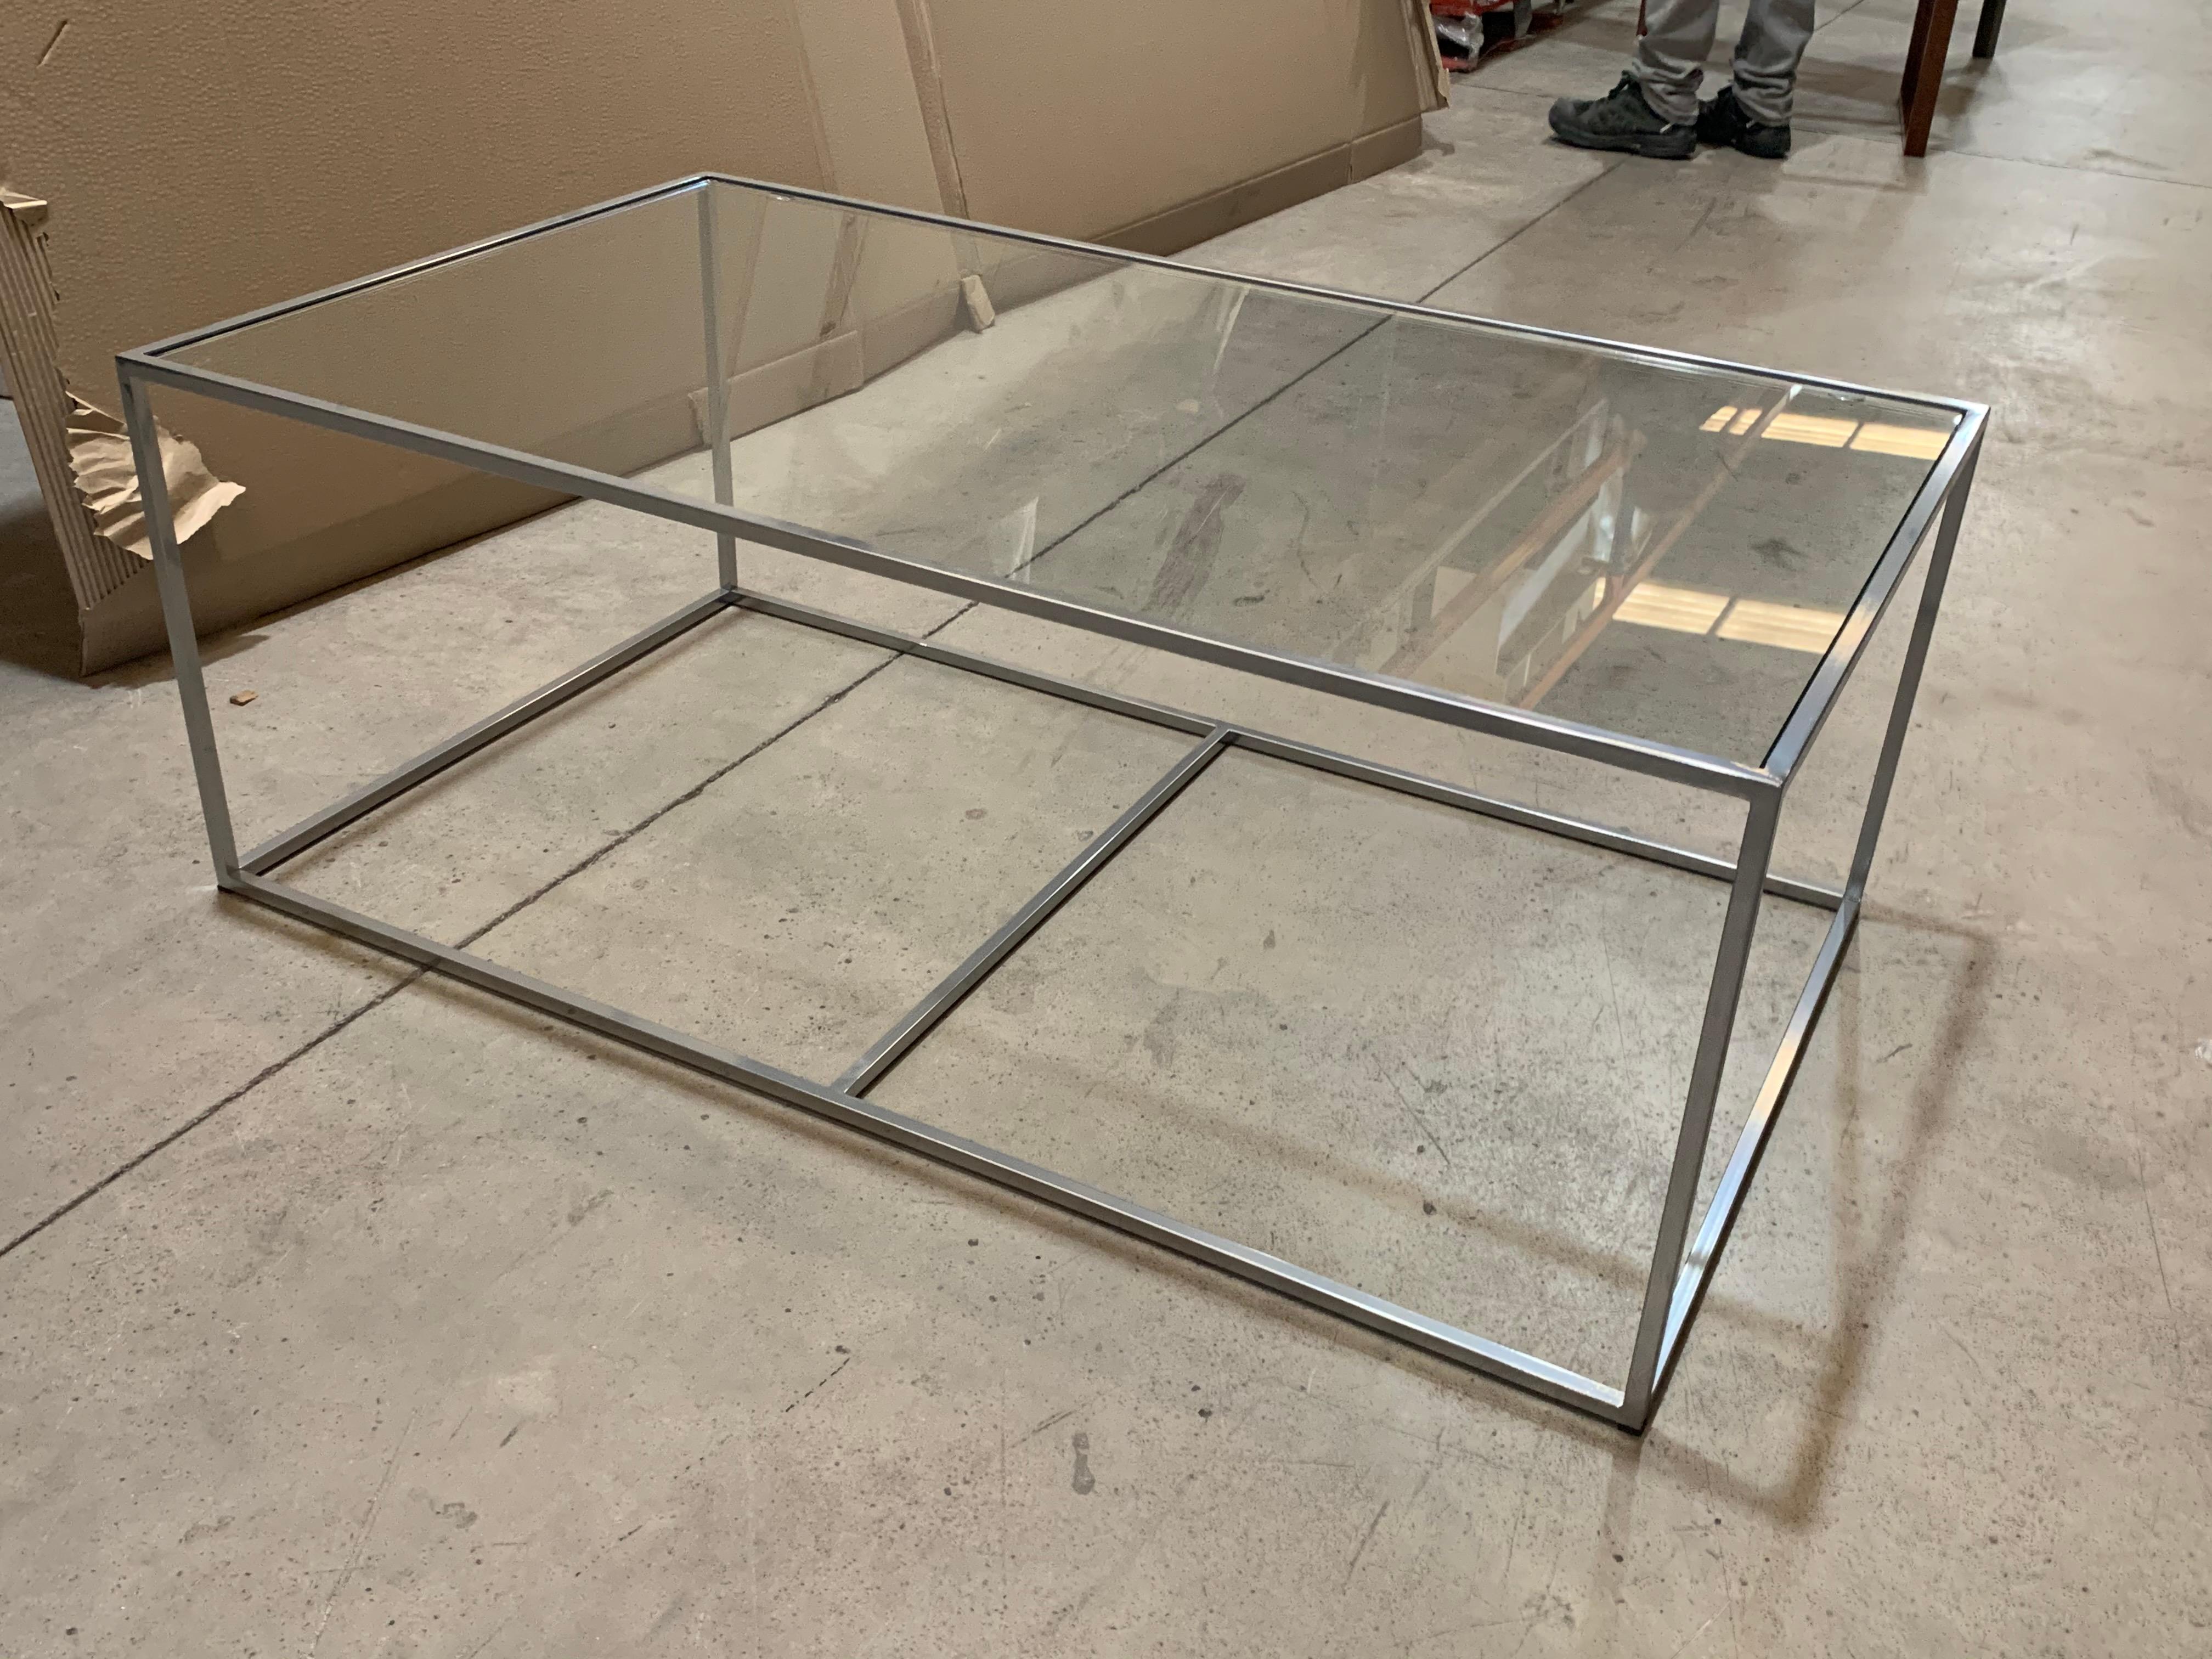 Nouvelle table rectangulaire moderne blanche avec plateau en verre. Intérieur ou extérieur.

Fer forgé.
 